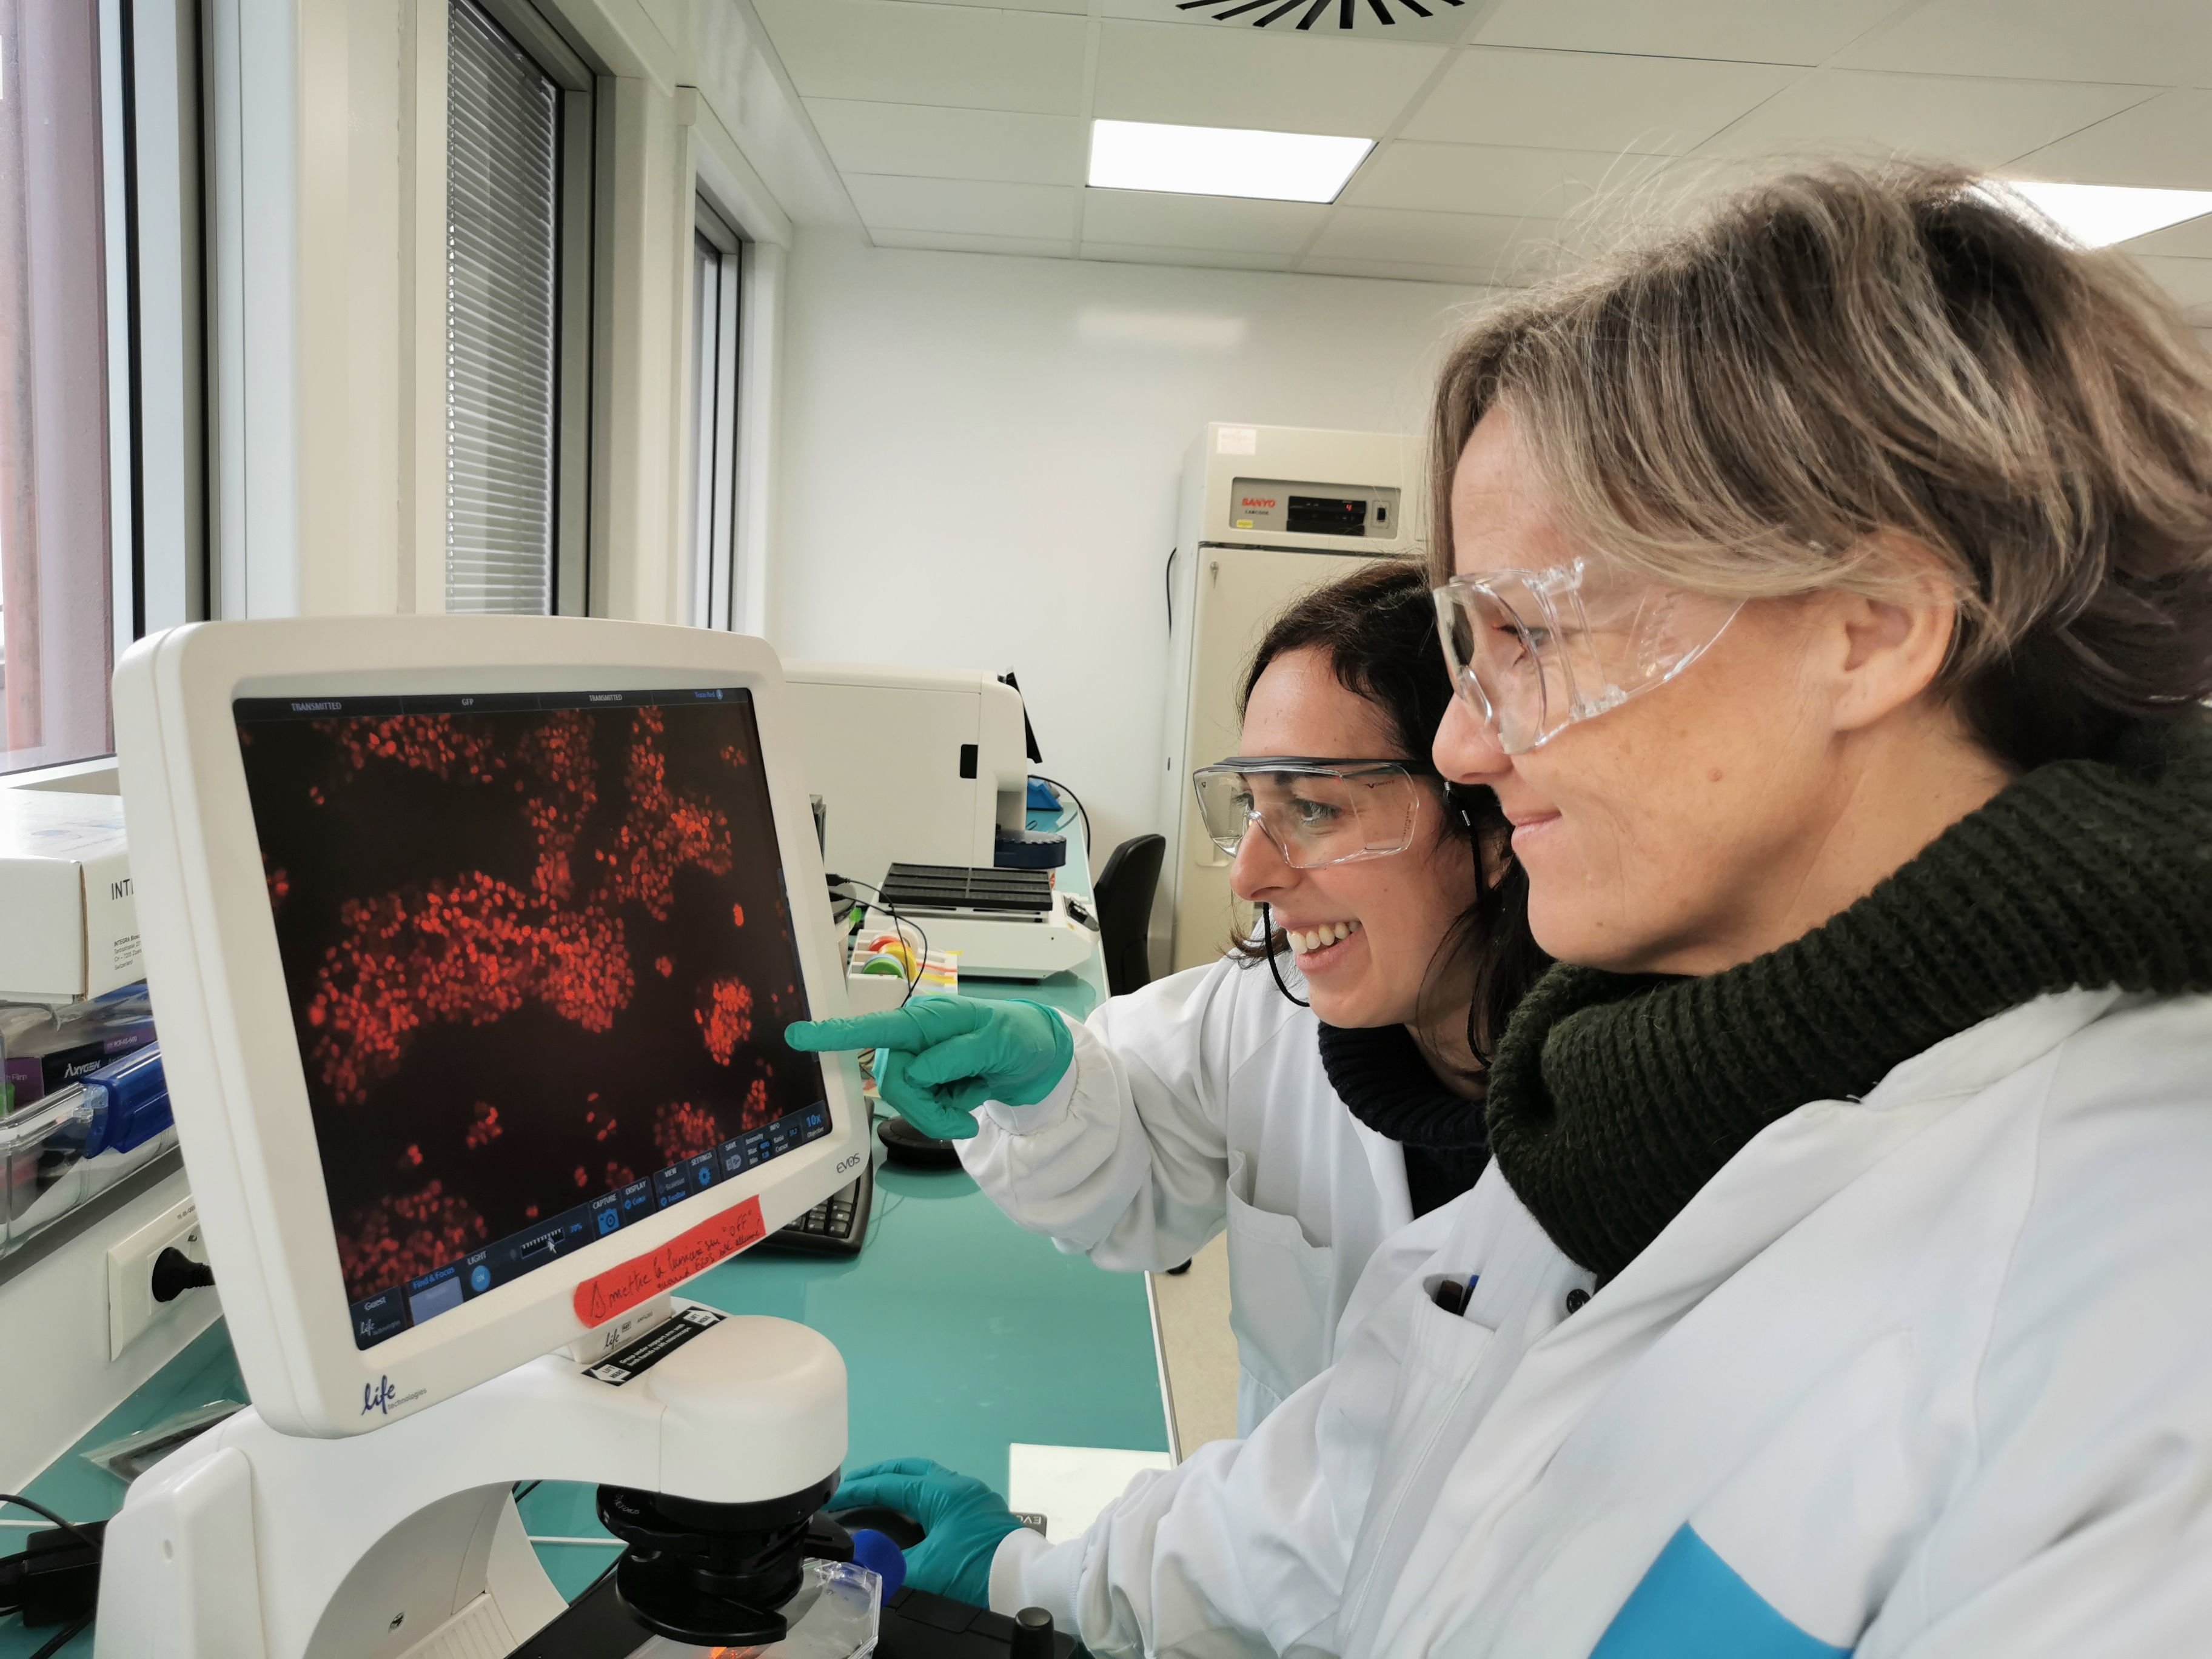 Vitry-sur-Seine (Val-de-Marne), le 30 janvier 2023. Deux chercheuses de Sanofi, sur la site de R&D dédié à l’oncologie, échangent sur une image de cellule tumorale. Sanofi